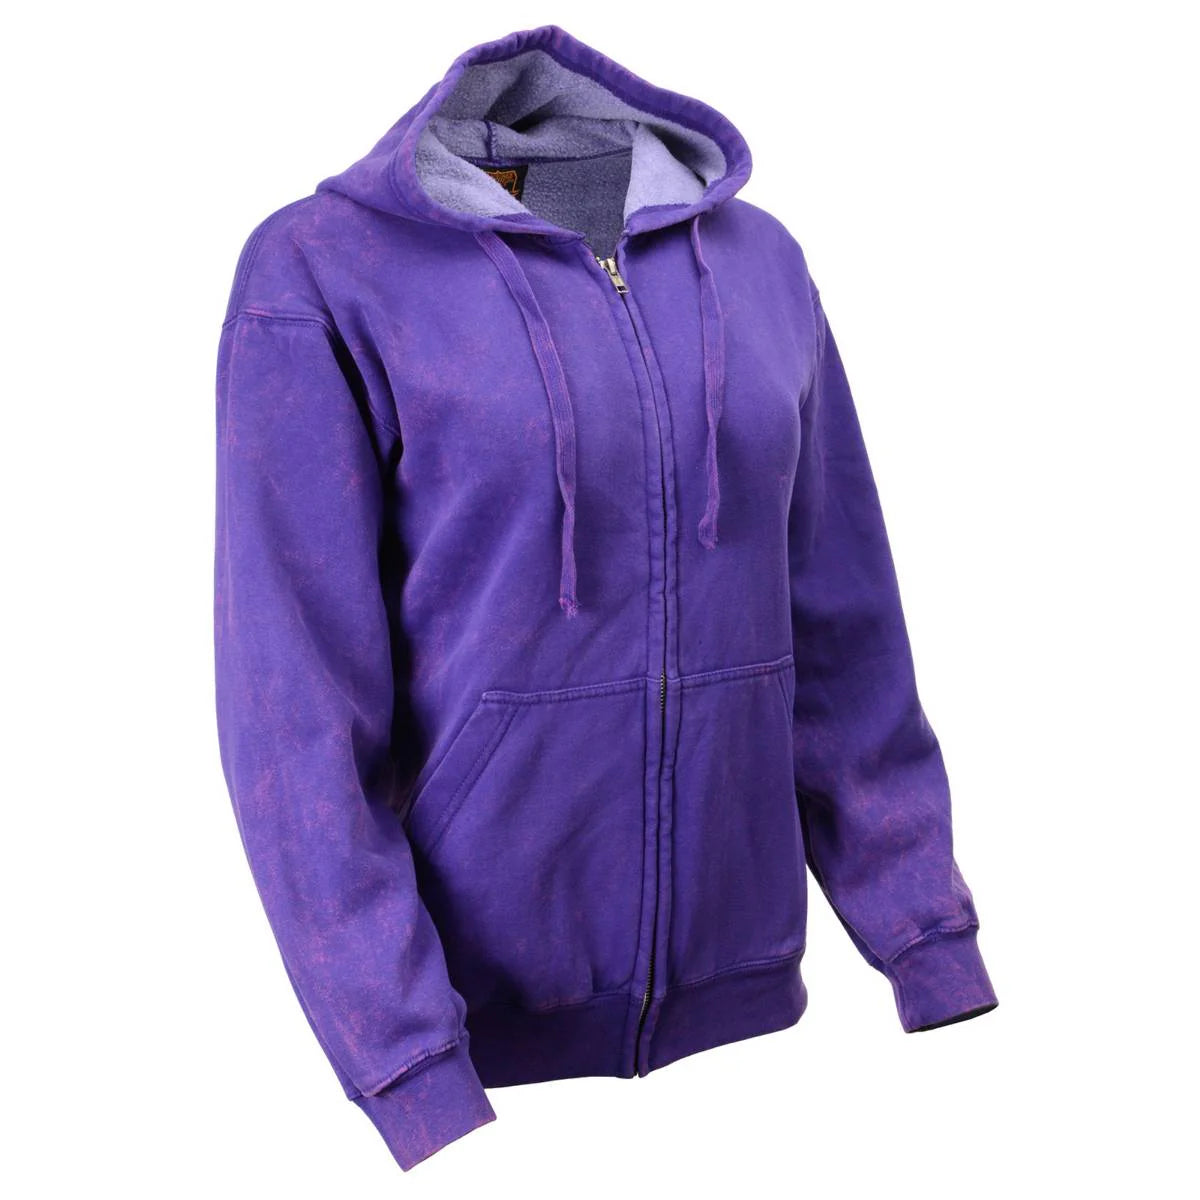 Women's Distressed Purple Sweatshirt Full Zip Up Long Sleeve Casual Hoodie - With Pocket